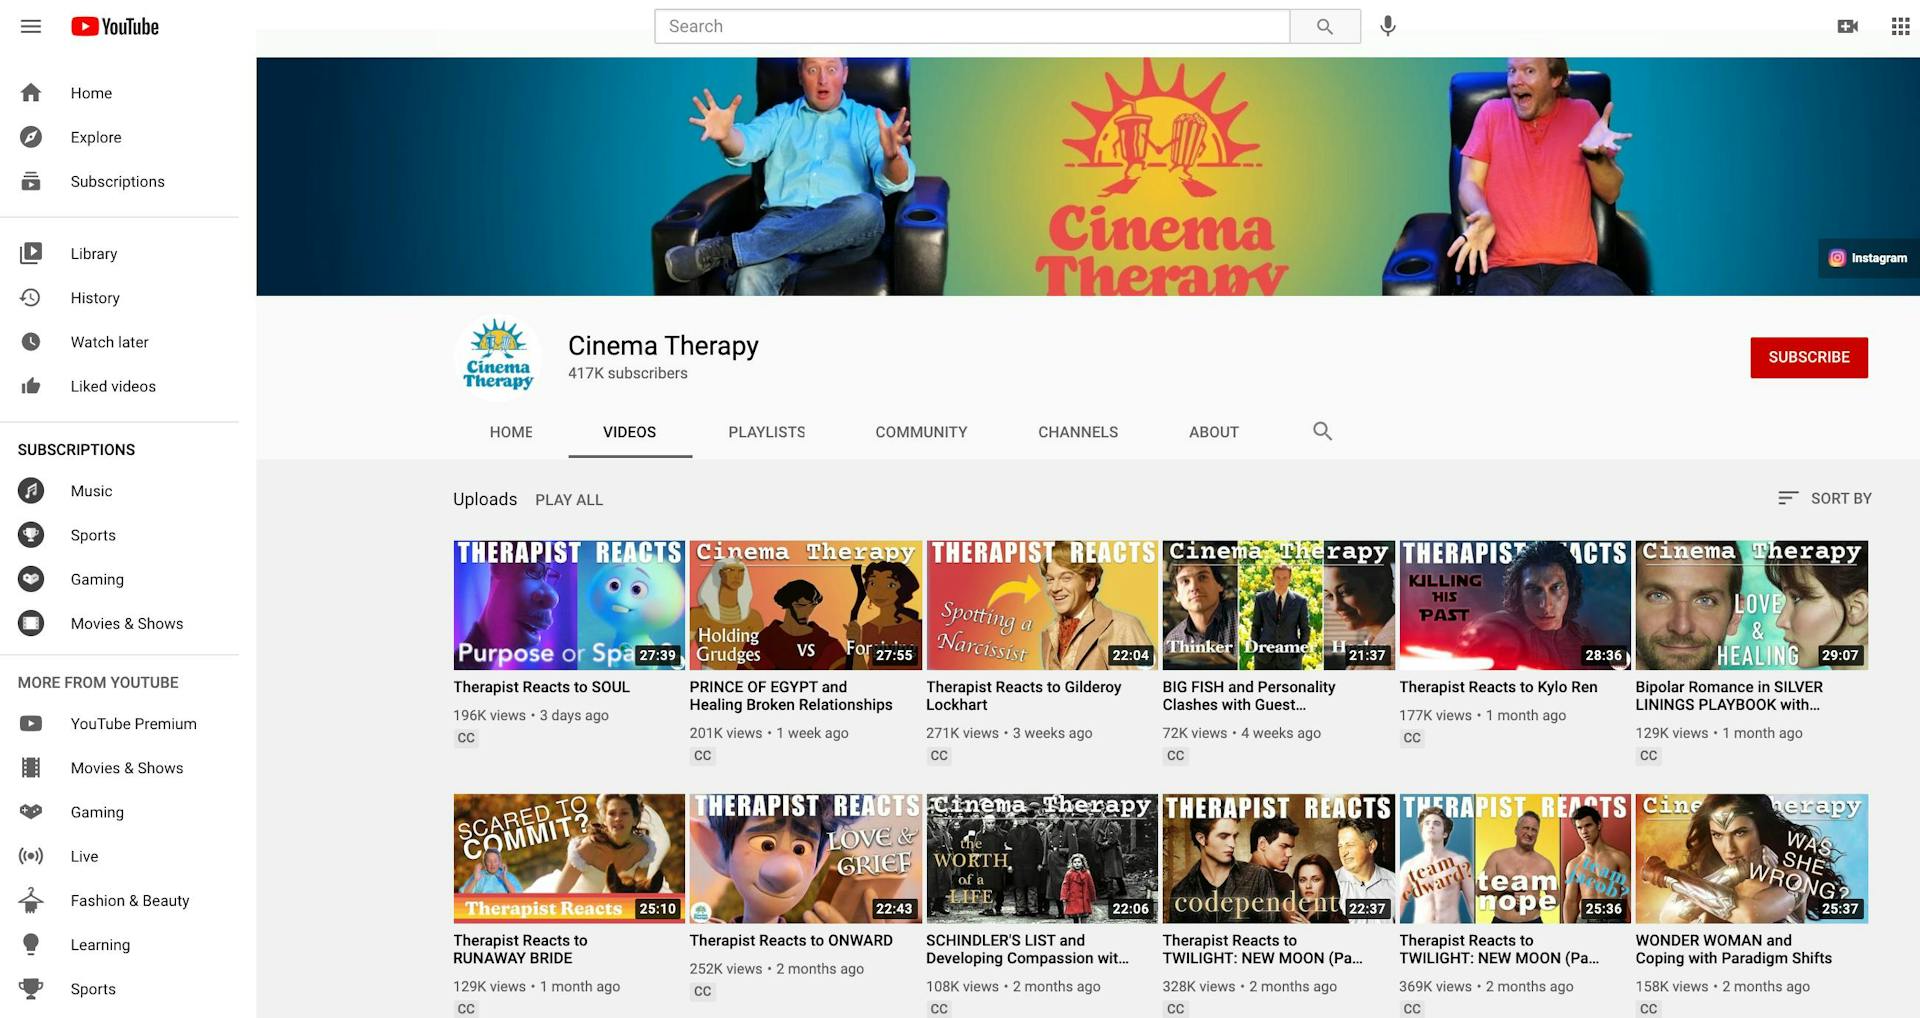 Liste des vidéos de la chaîne YouTube de Cinema Therapy 